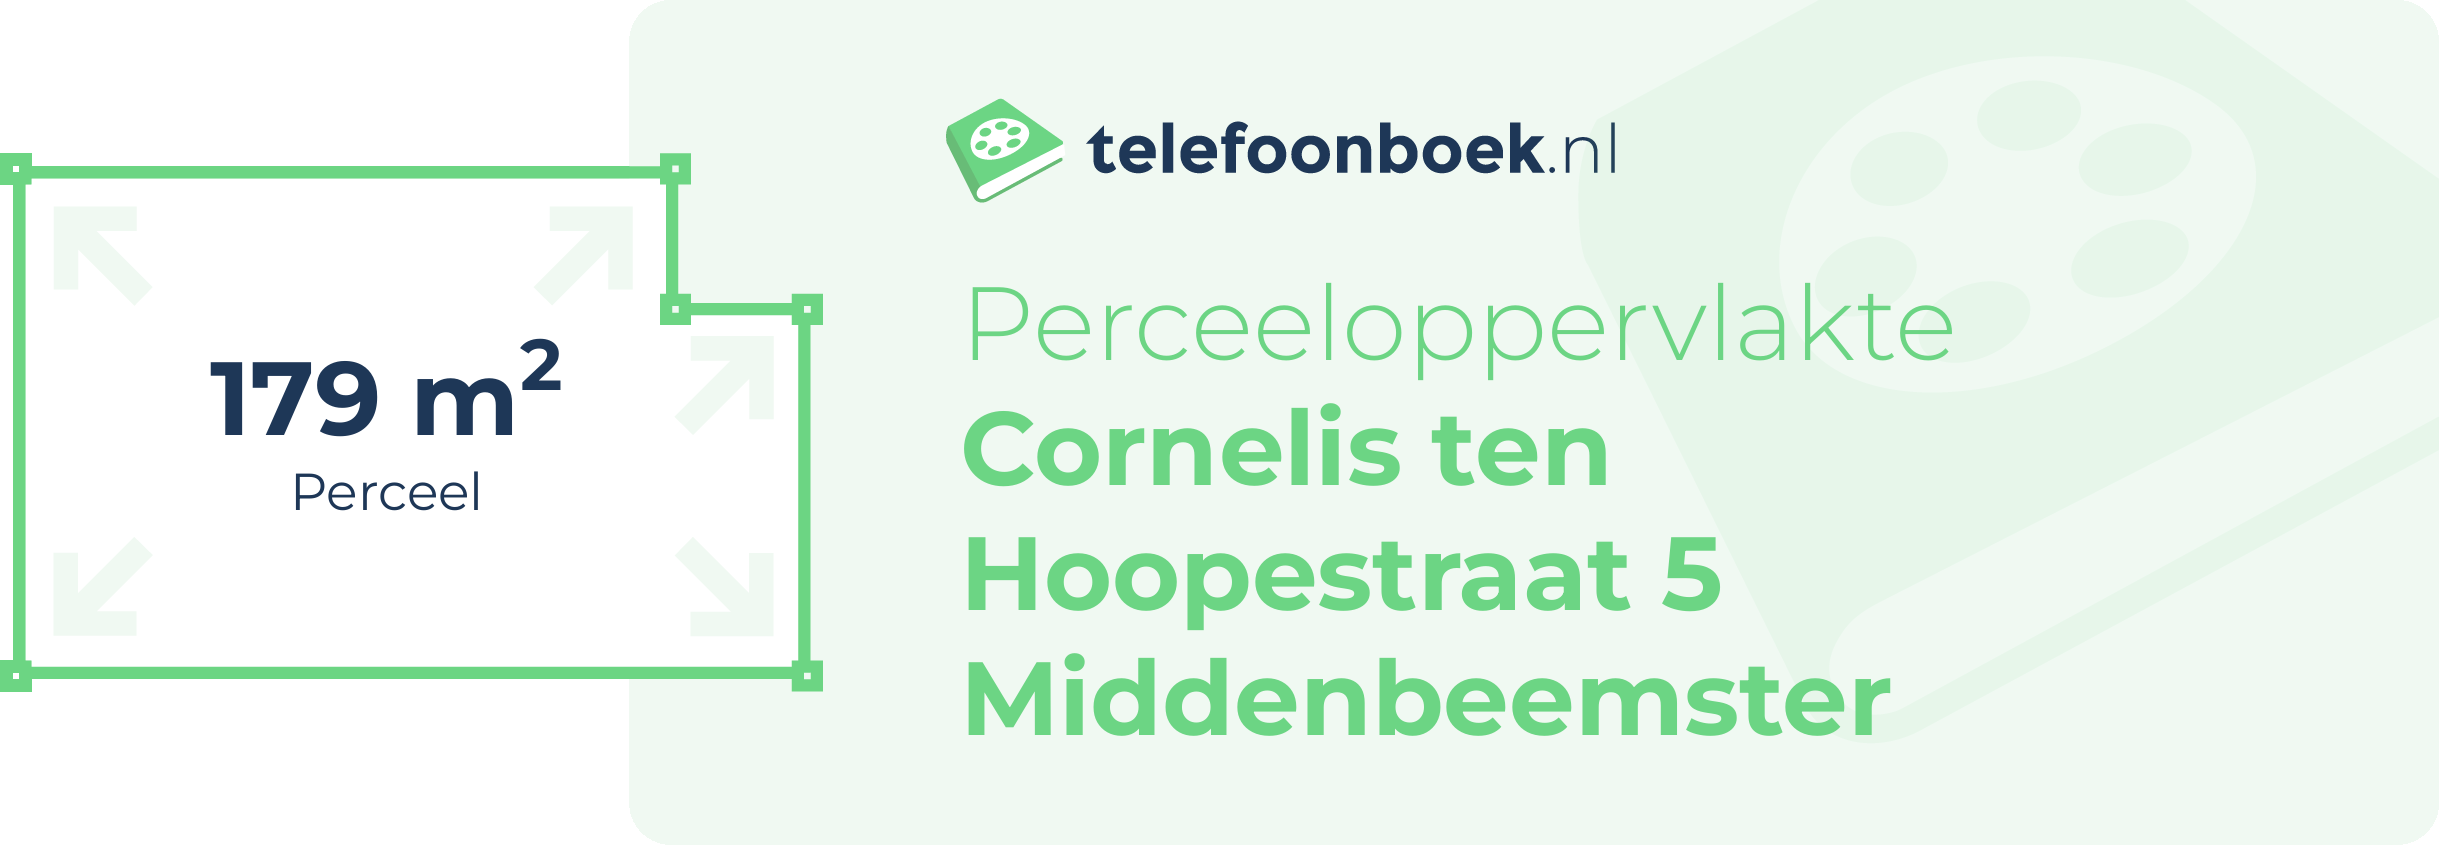 Perceeloppervlakte Cornelis Ten Hoopestraat 5 Middenbeemster